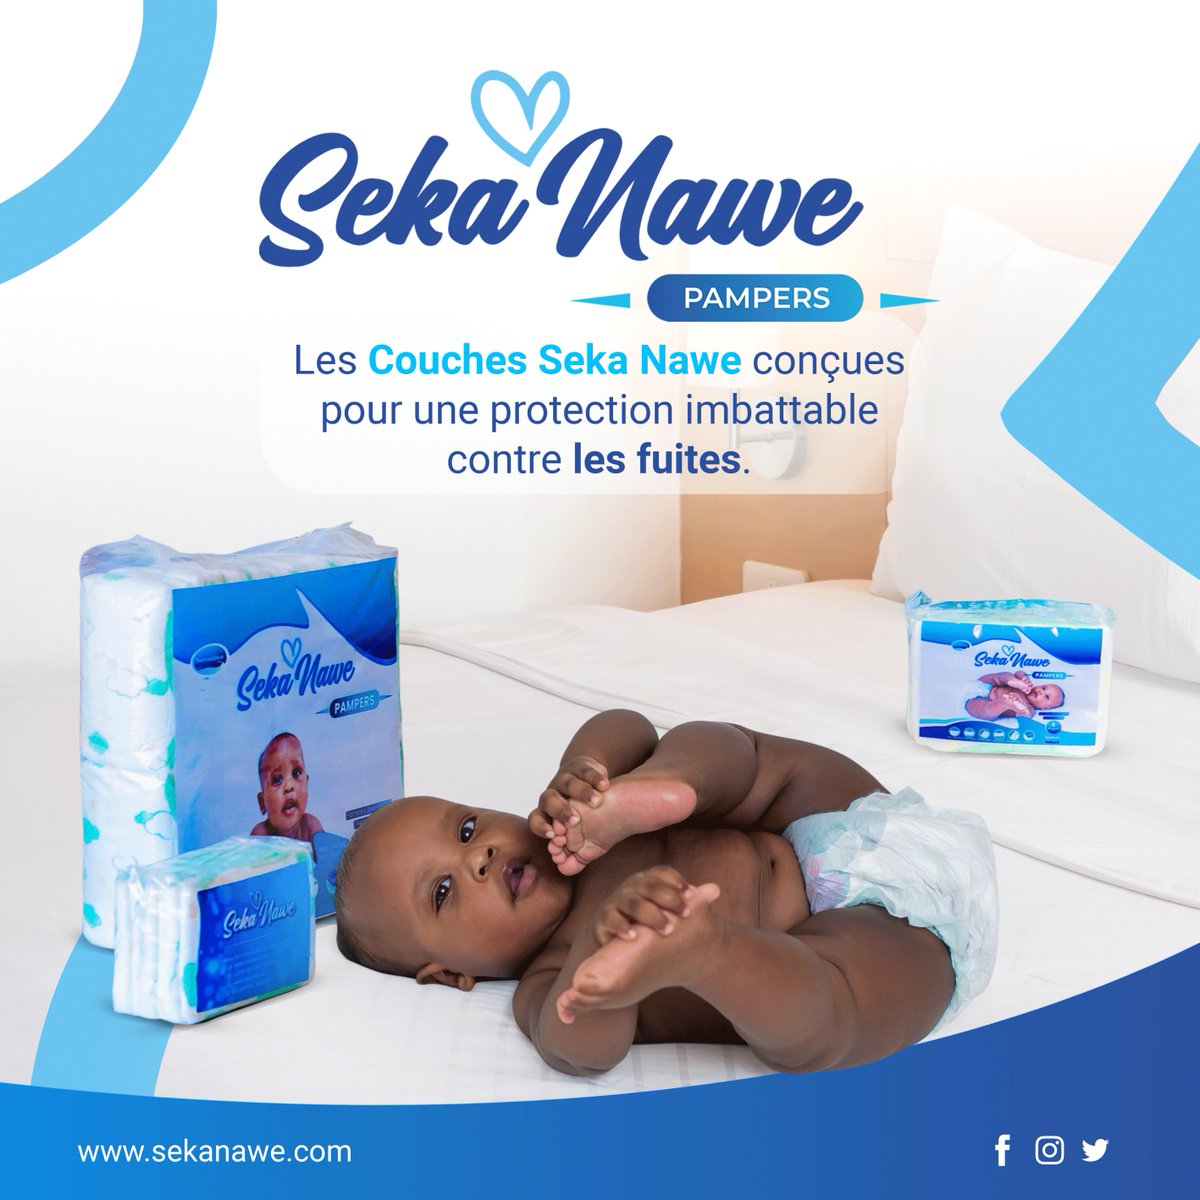 Chère maman, qui te demandais souvent comment laver les draps, après une nuit de sommeil de son bébé : la réponse à tes nombreuses questions c'est Seka Nawe. 

Nos couches sont conçues pour offrir une protection contre les fuites.

#sekanawe #pampers #Burundi #Abatwip